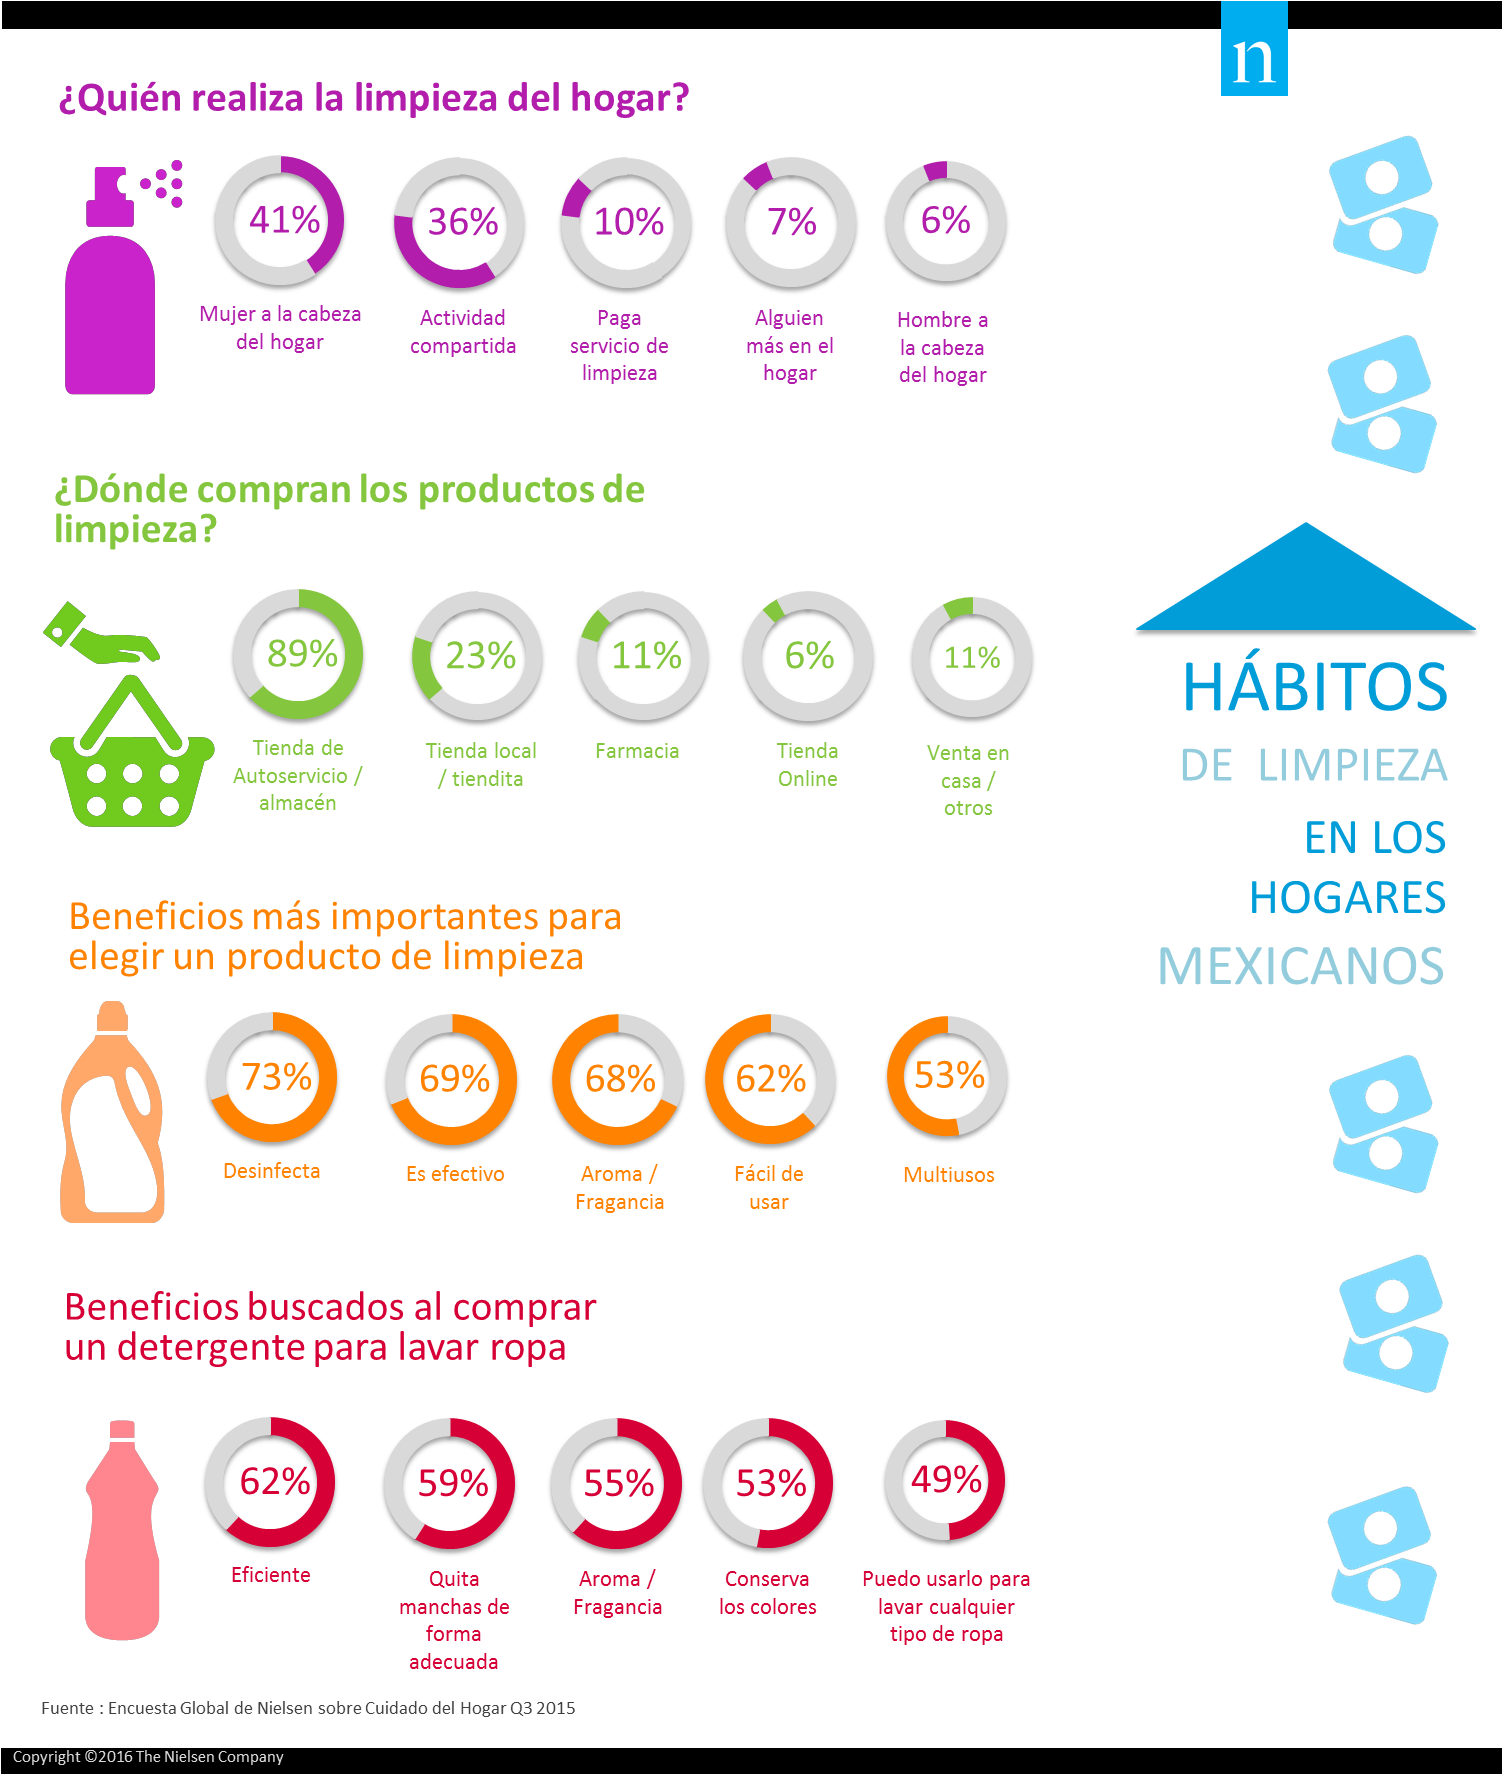 Mexicanos Prefieren Desinfección Y Aroma En Productos - Habitos De Limpieza En Los Hogares Colombianos Clipart (1502x1774), Png Download